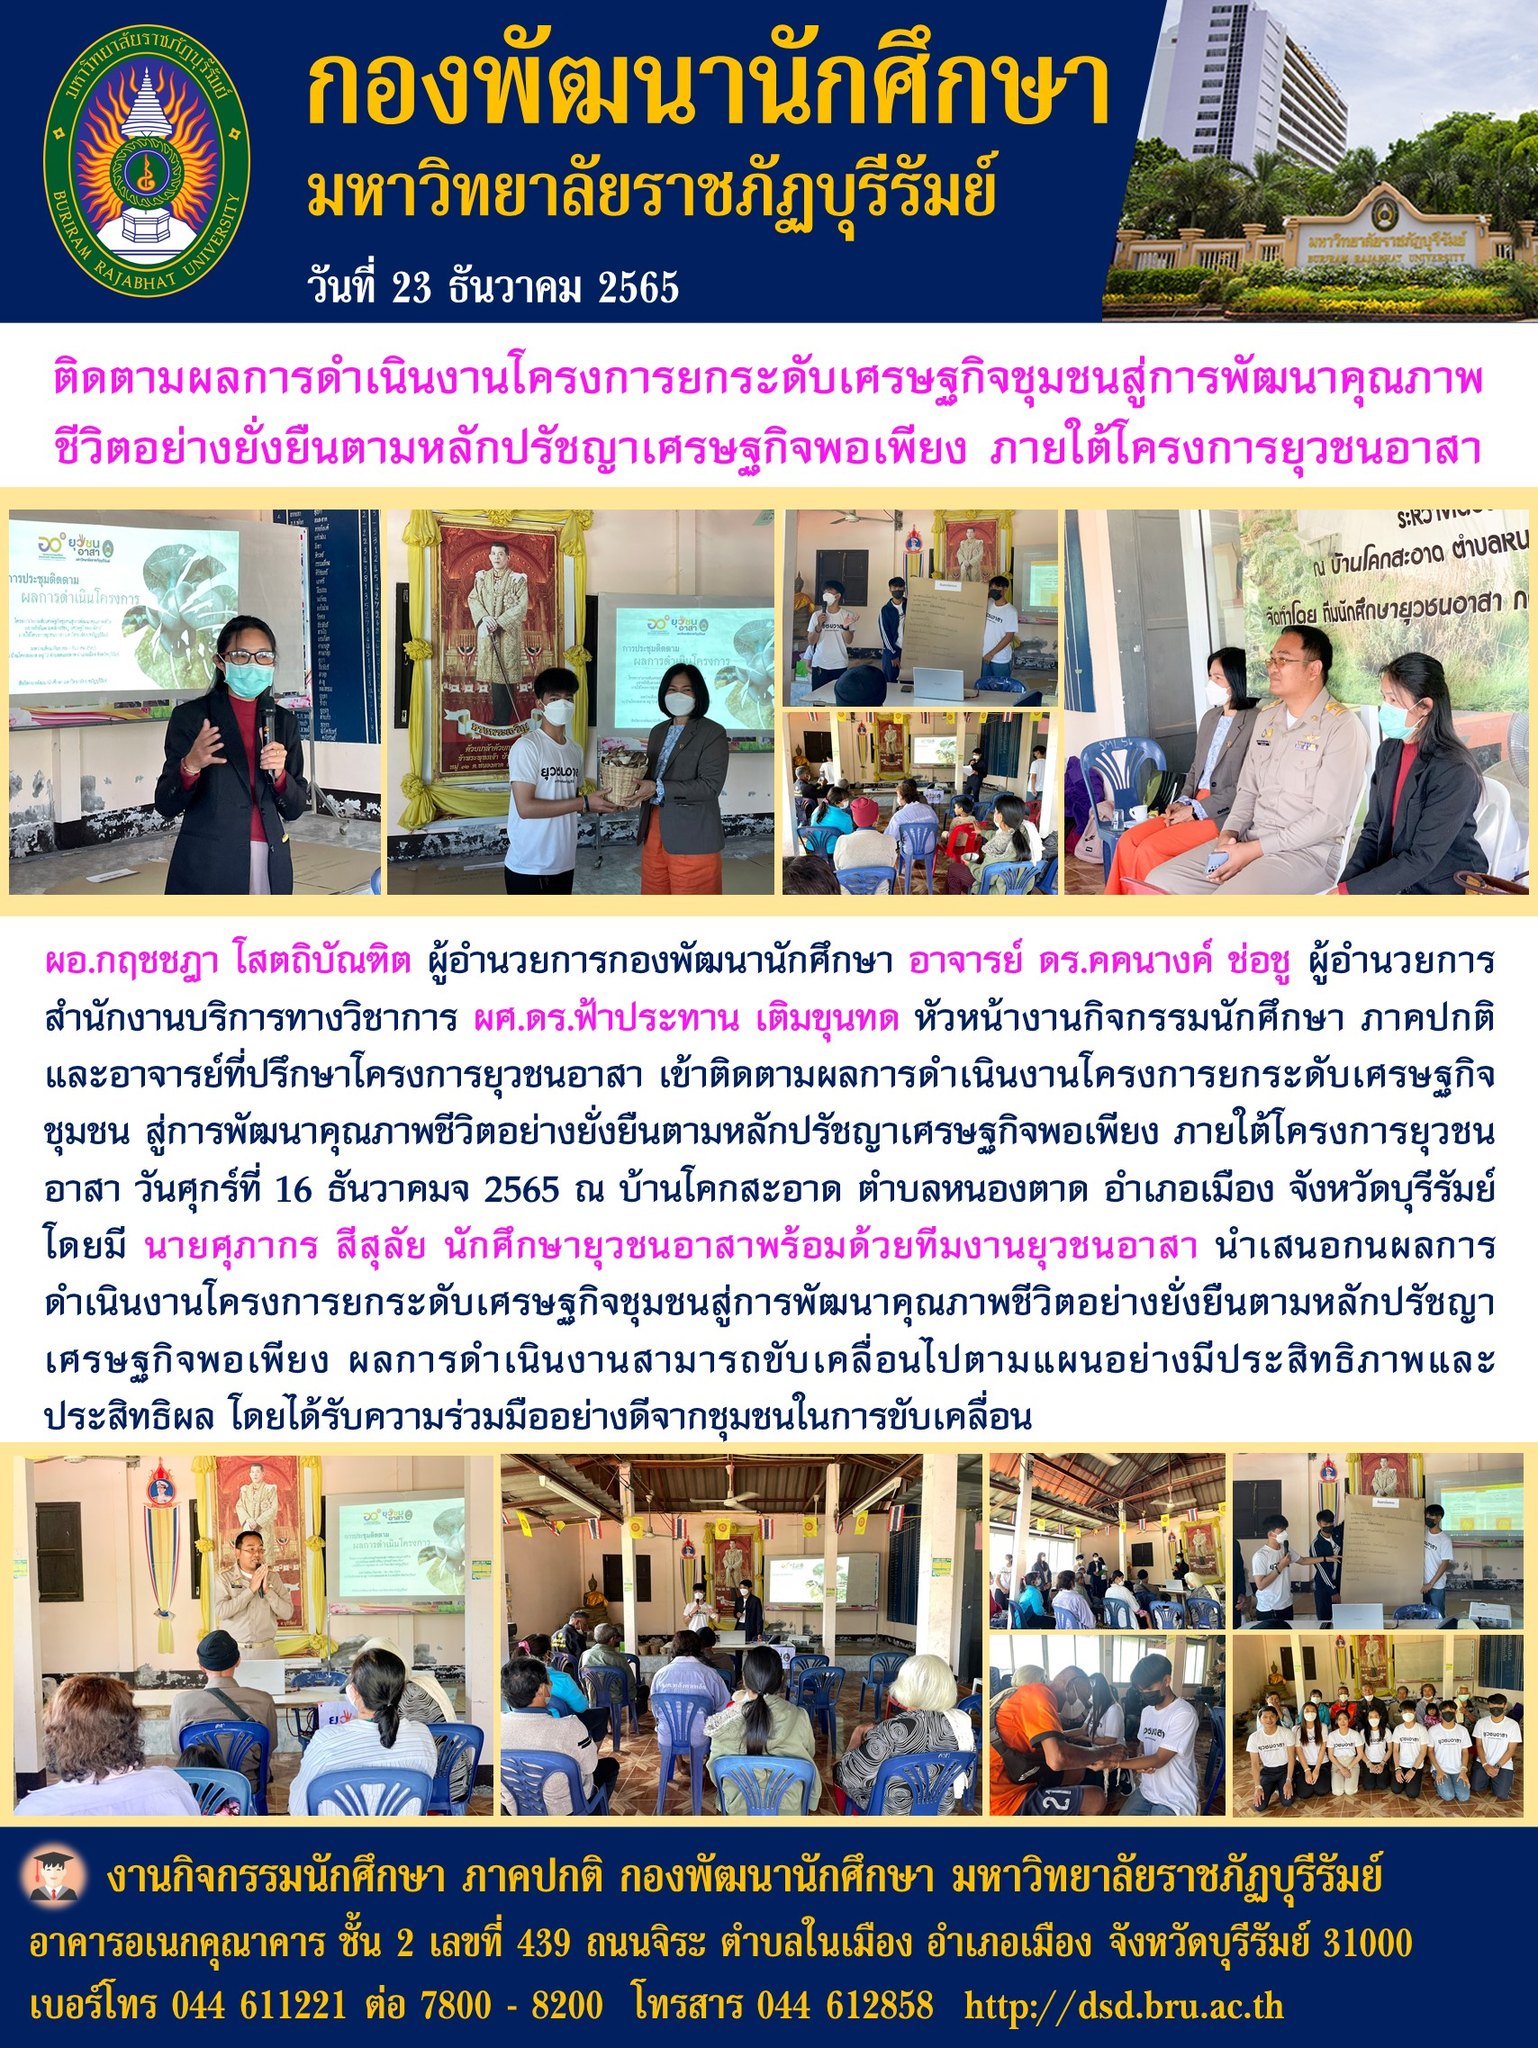 กองพัฒนานักศึกษา มหาวิทยาลัยราชภัฏบุรีรัมย์ ติดตามผลโครงการยุวชนอาสา